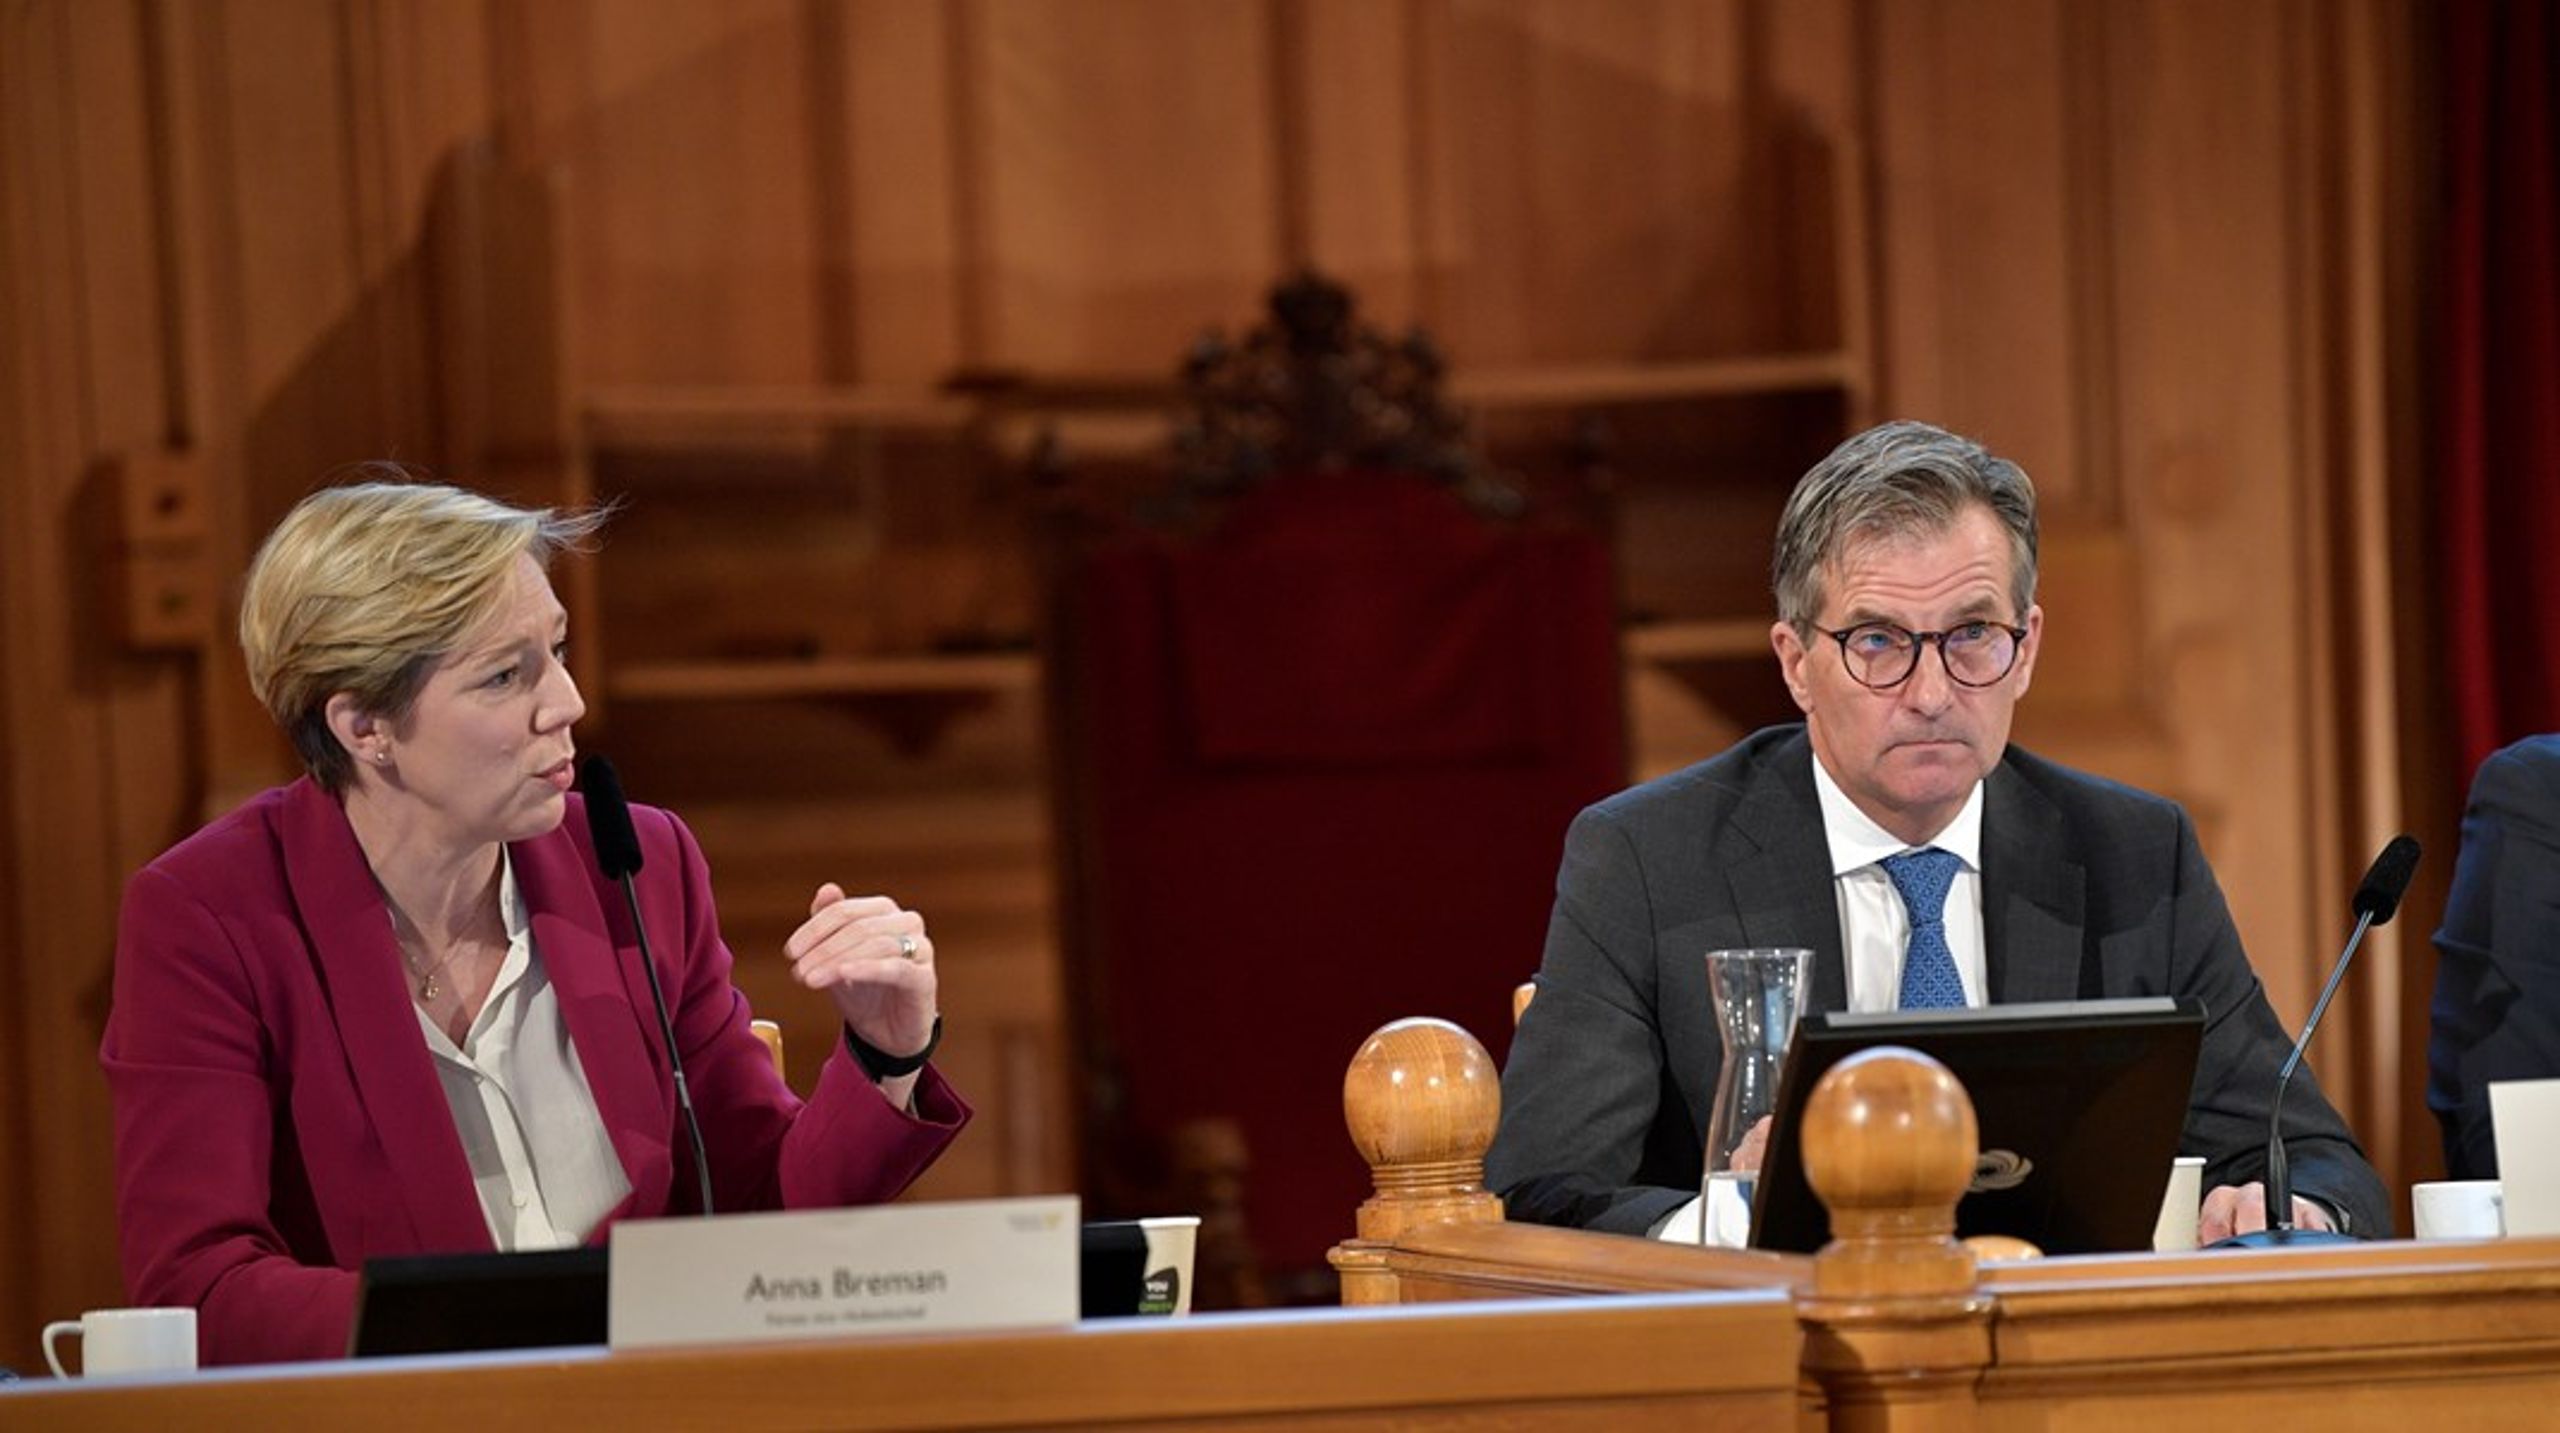 Riksbankens direktion, med bland andra förste vice riksbankschef Anna Breman och riksbankschef Erik Thedéen, frågades ut av finansutskottet under tisdagen.&nbsp;